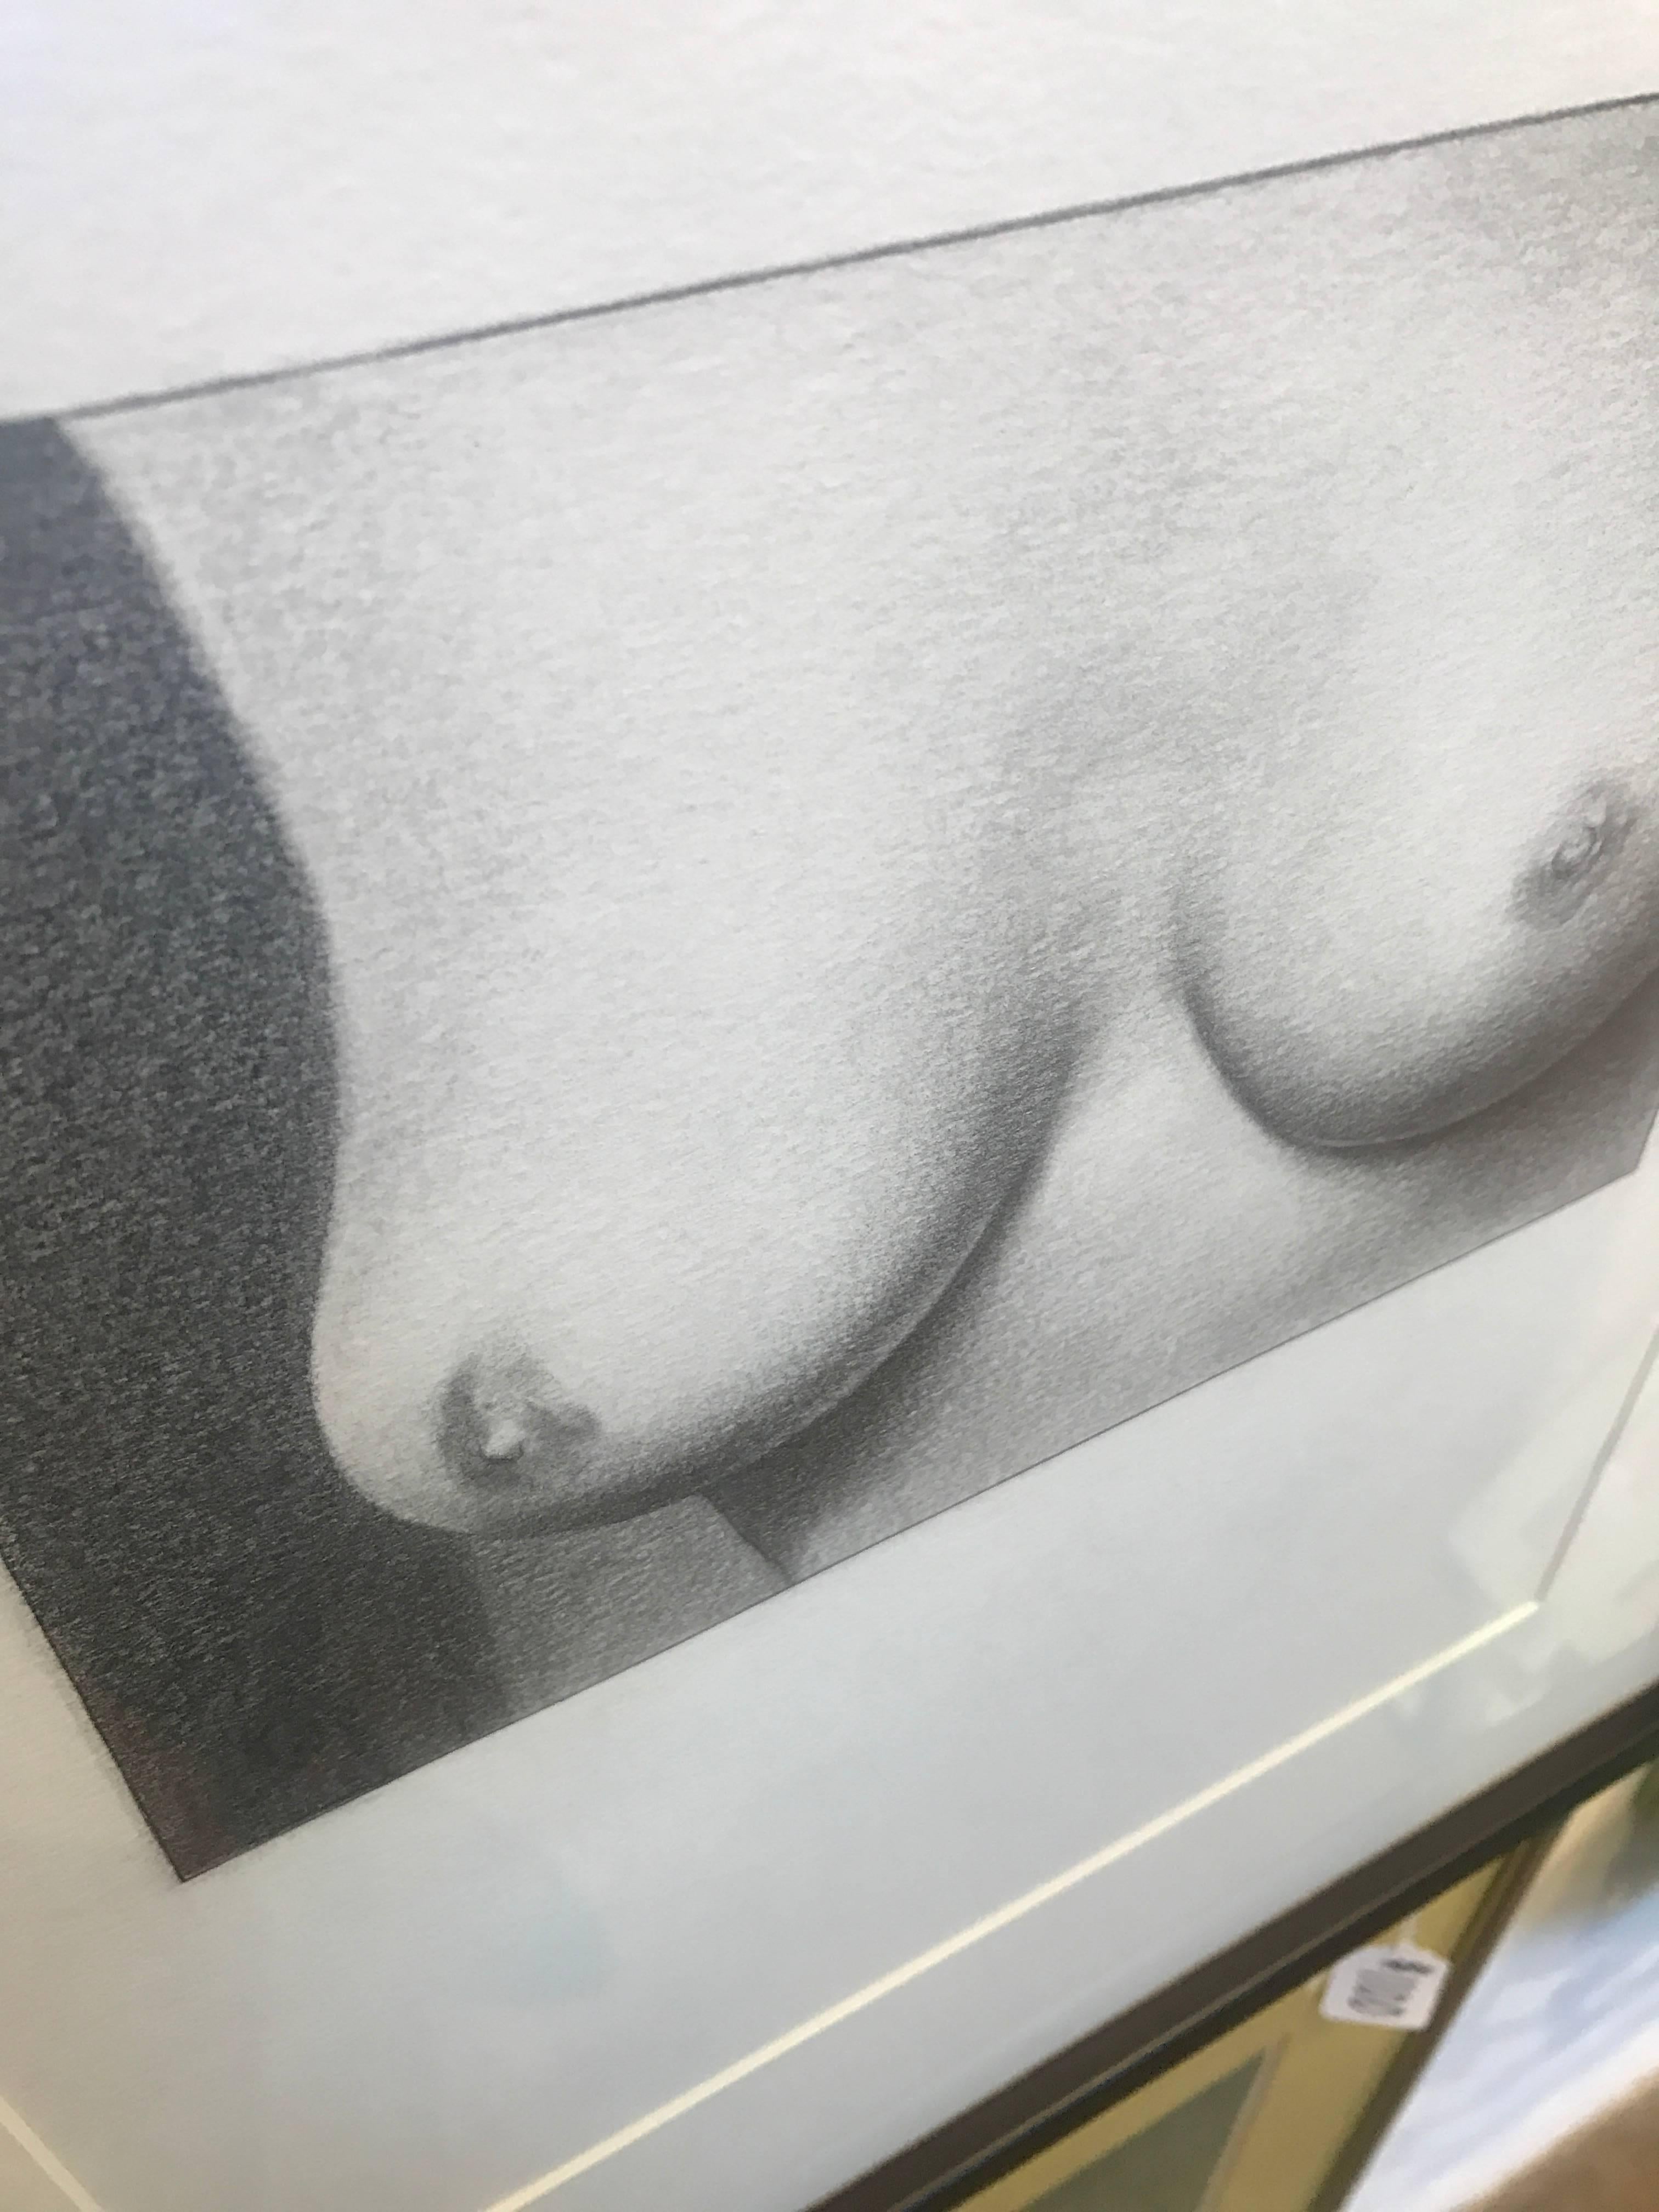 Edward Kay, Recession Tits, framed drawing  - Art by Edward Kay 